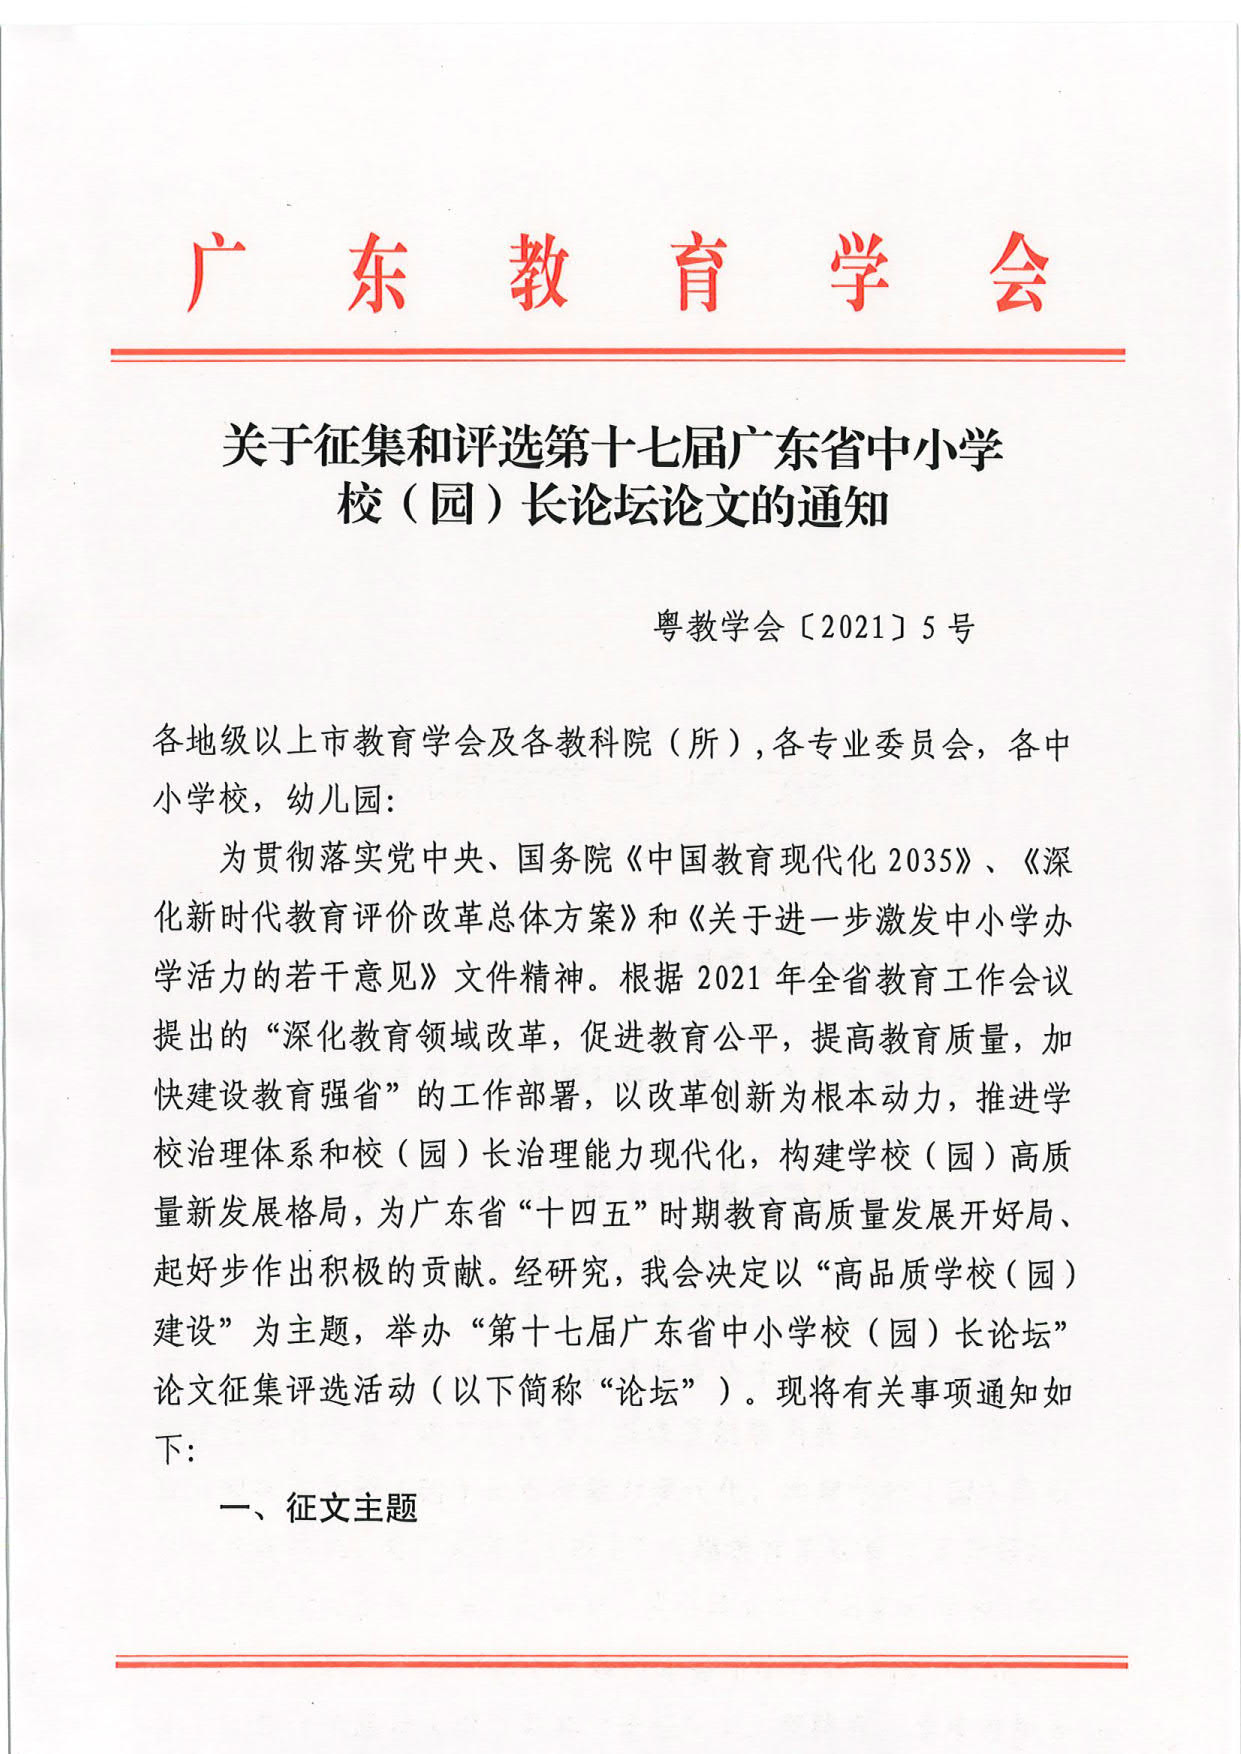 2021-3-16关于征集和评选第十七届广东省中小学校（园）长论坛论文的通知_1.jpg